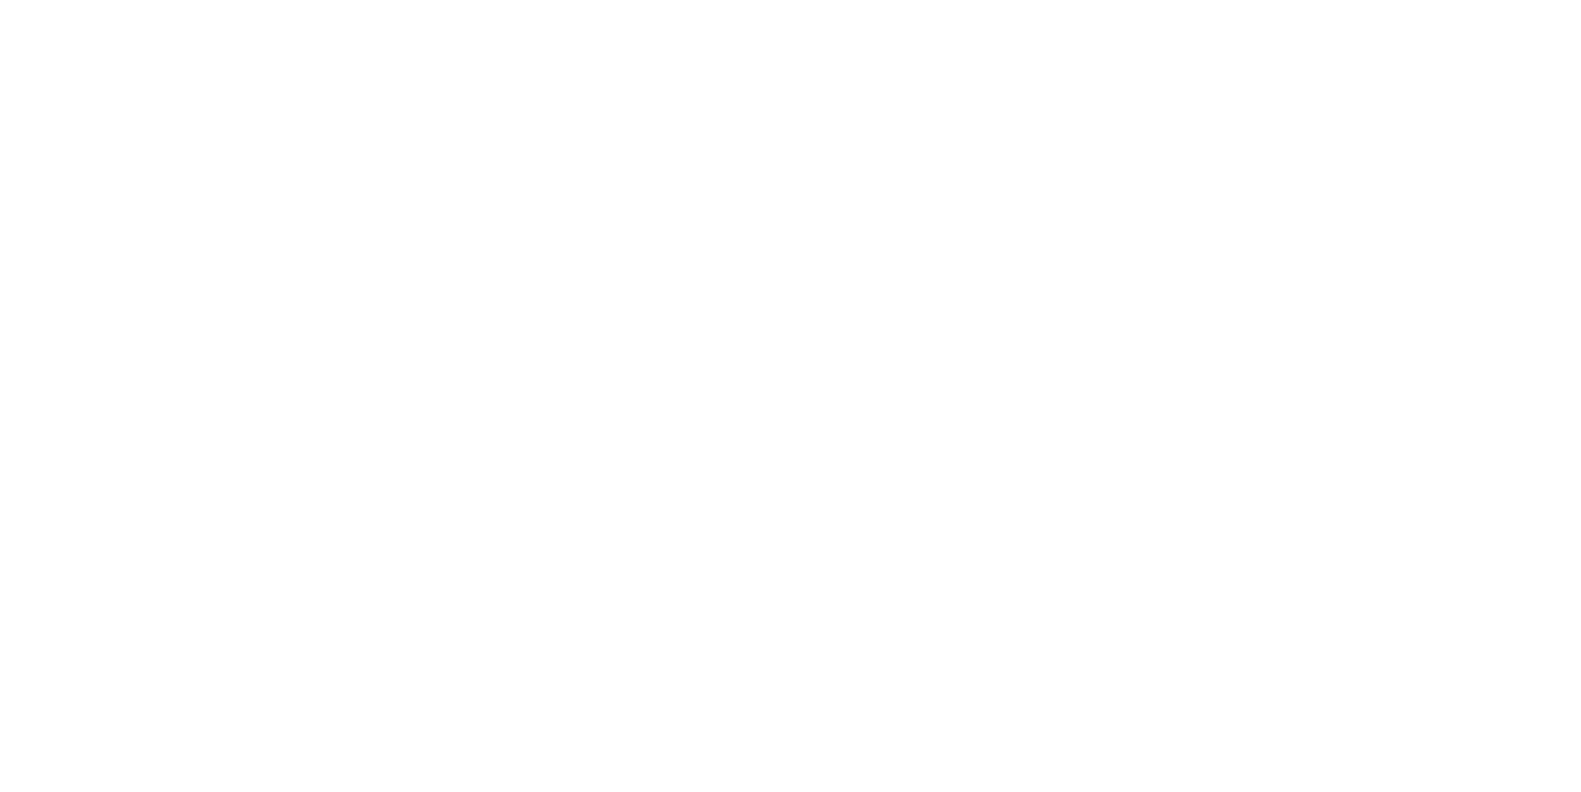 Viva Energy logo large for dark backgrounds (transparent PNG)